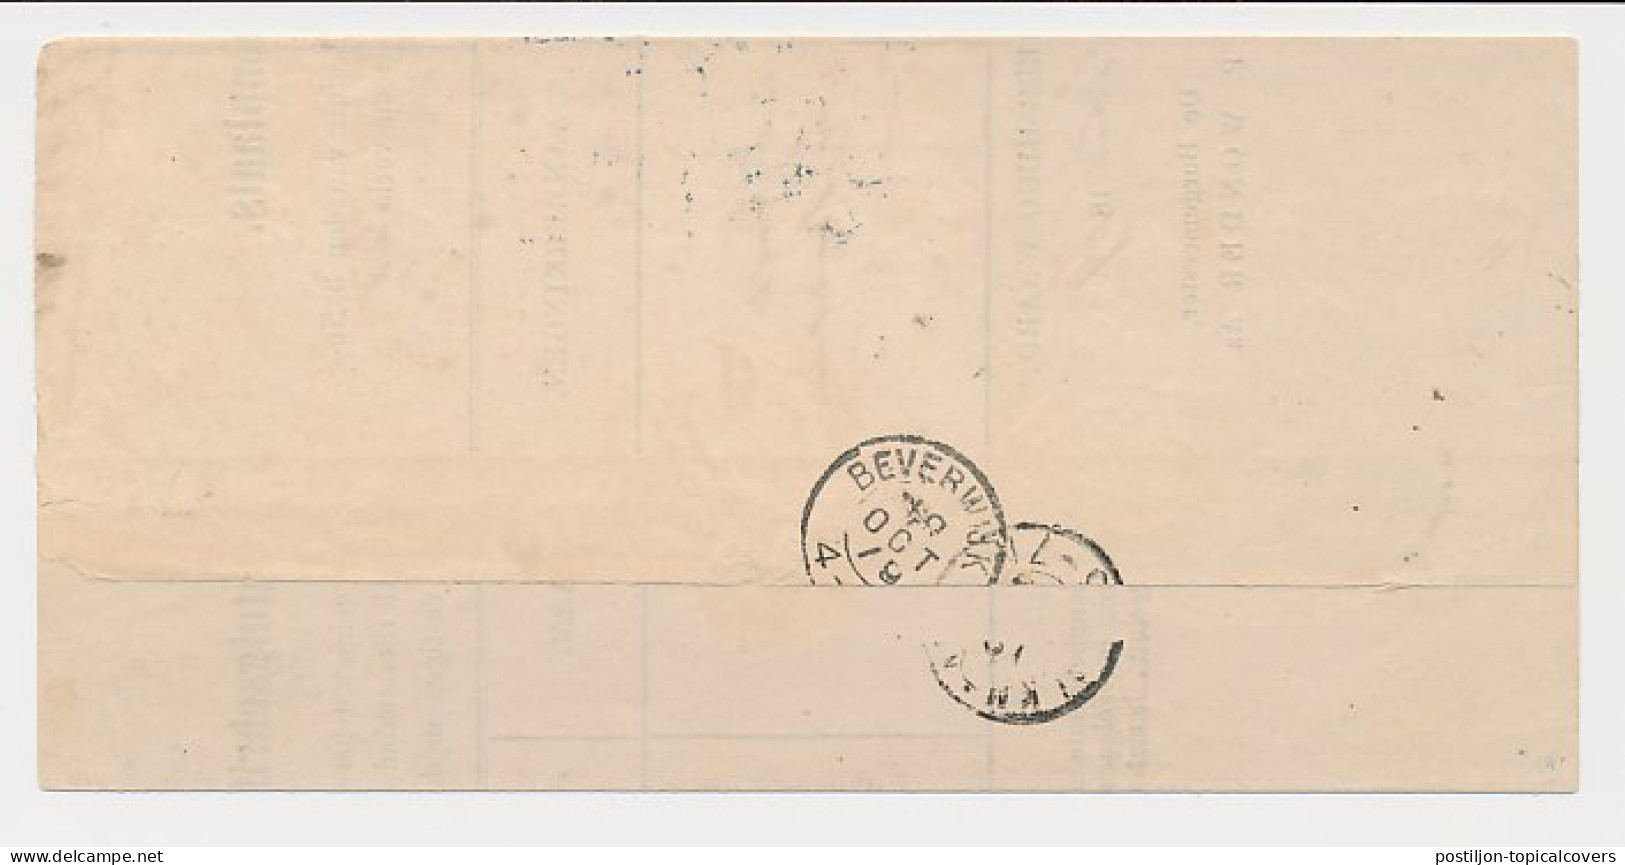 Stationstempel HUGOW. - Heerhugowaard - Noord-Scharwoude 1879 - Lettres & Documents